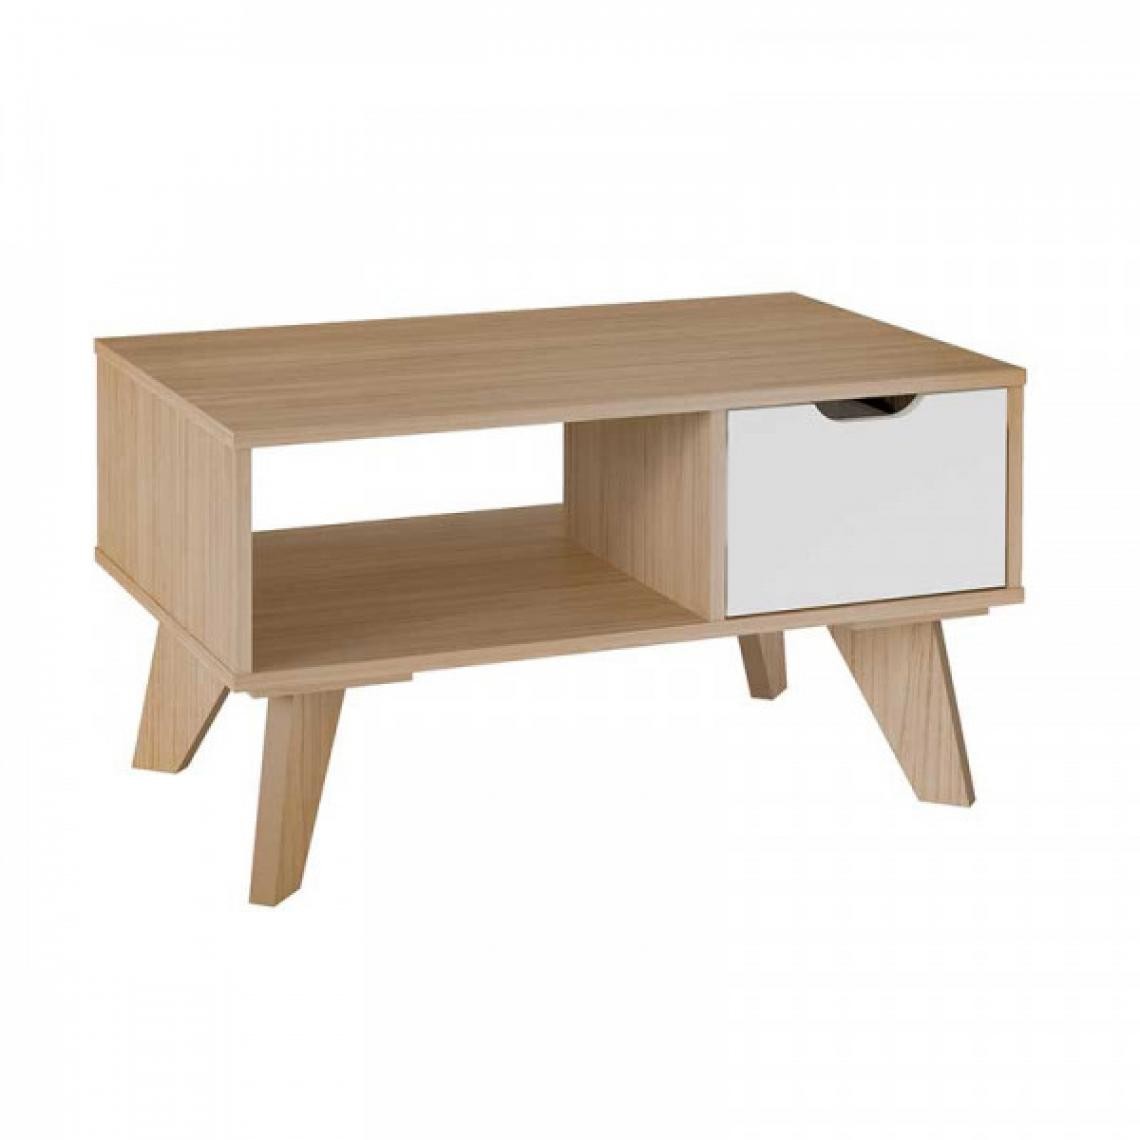 Dansmamaison - Table basse 1 tiroir Bois/Blanc - PIPVER - L 80 x l 50 x H 44 cm - Tables basses